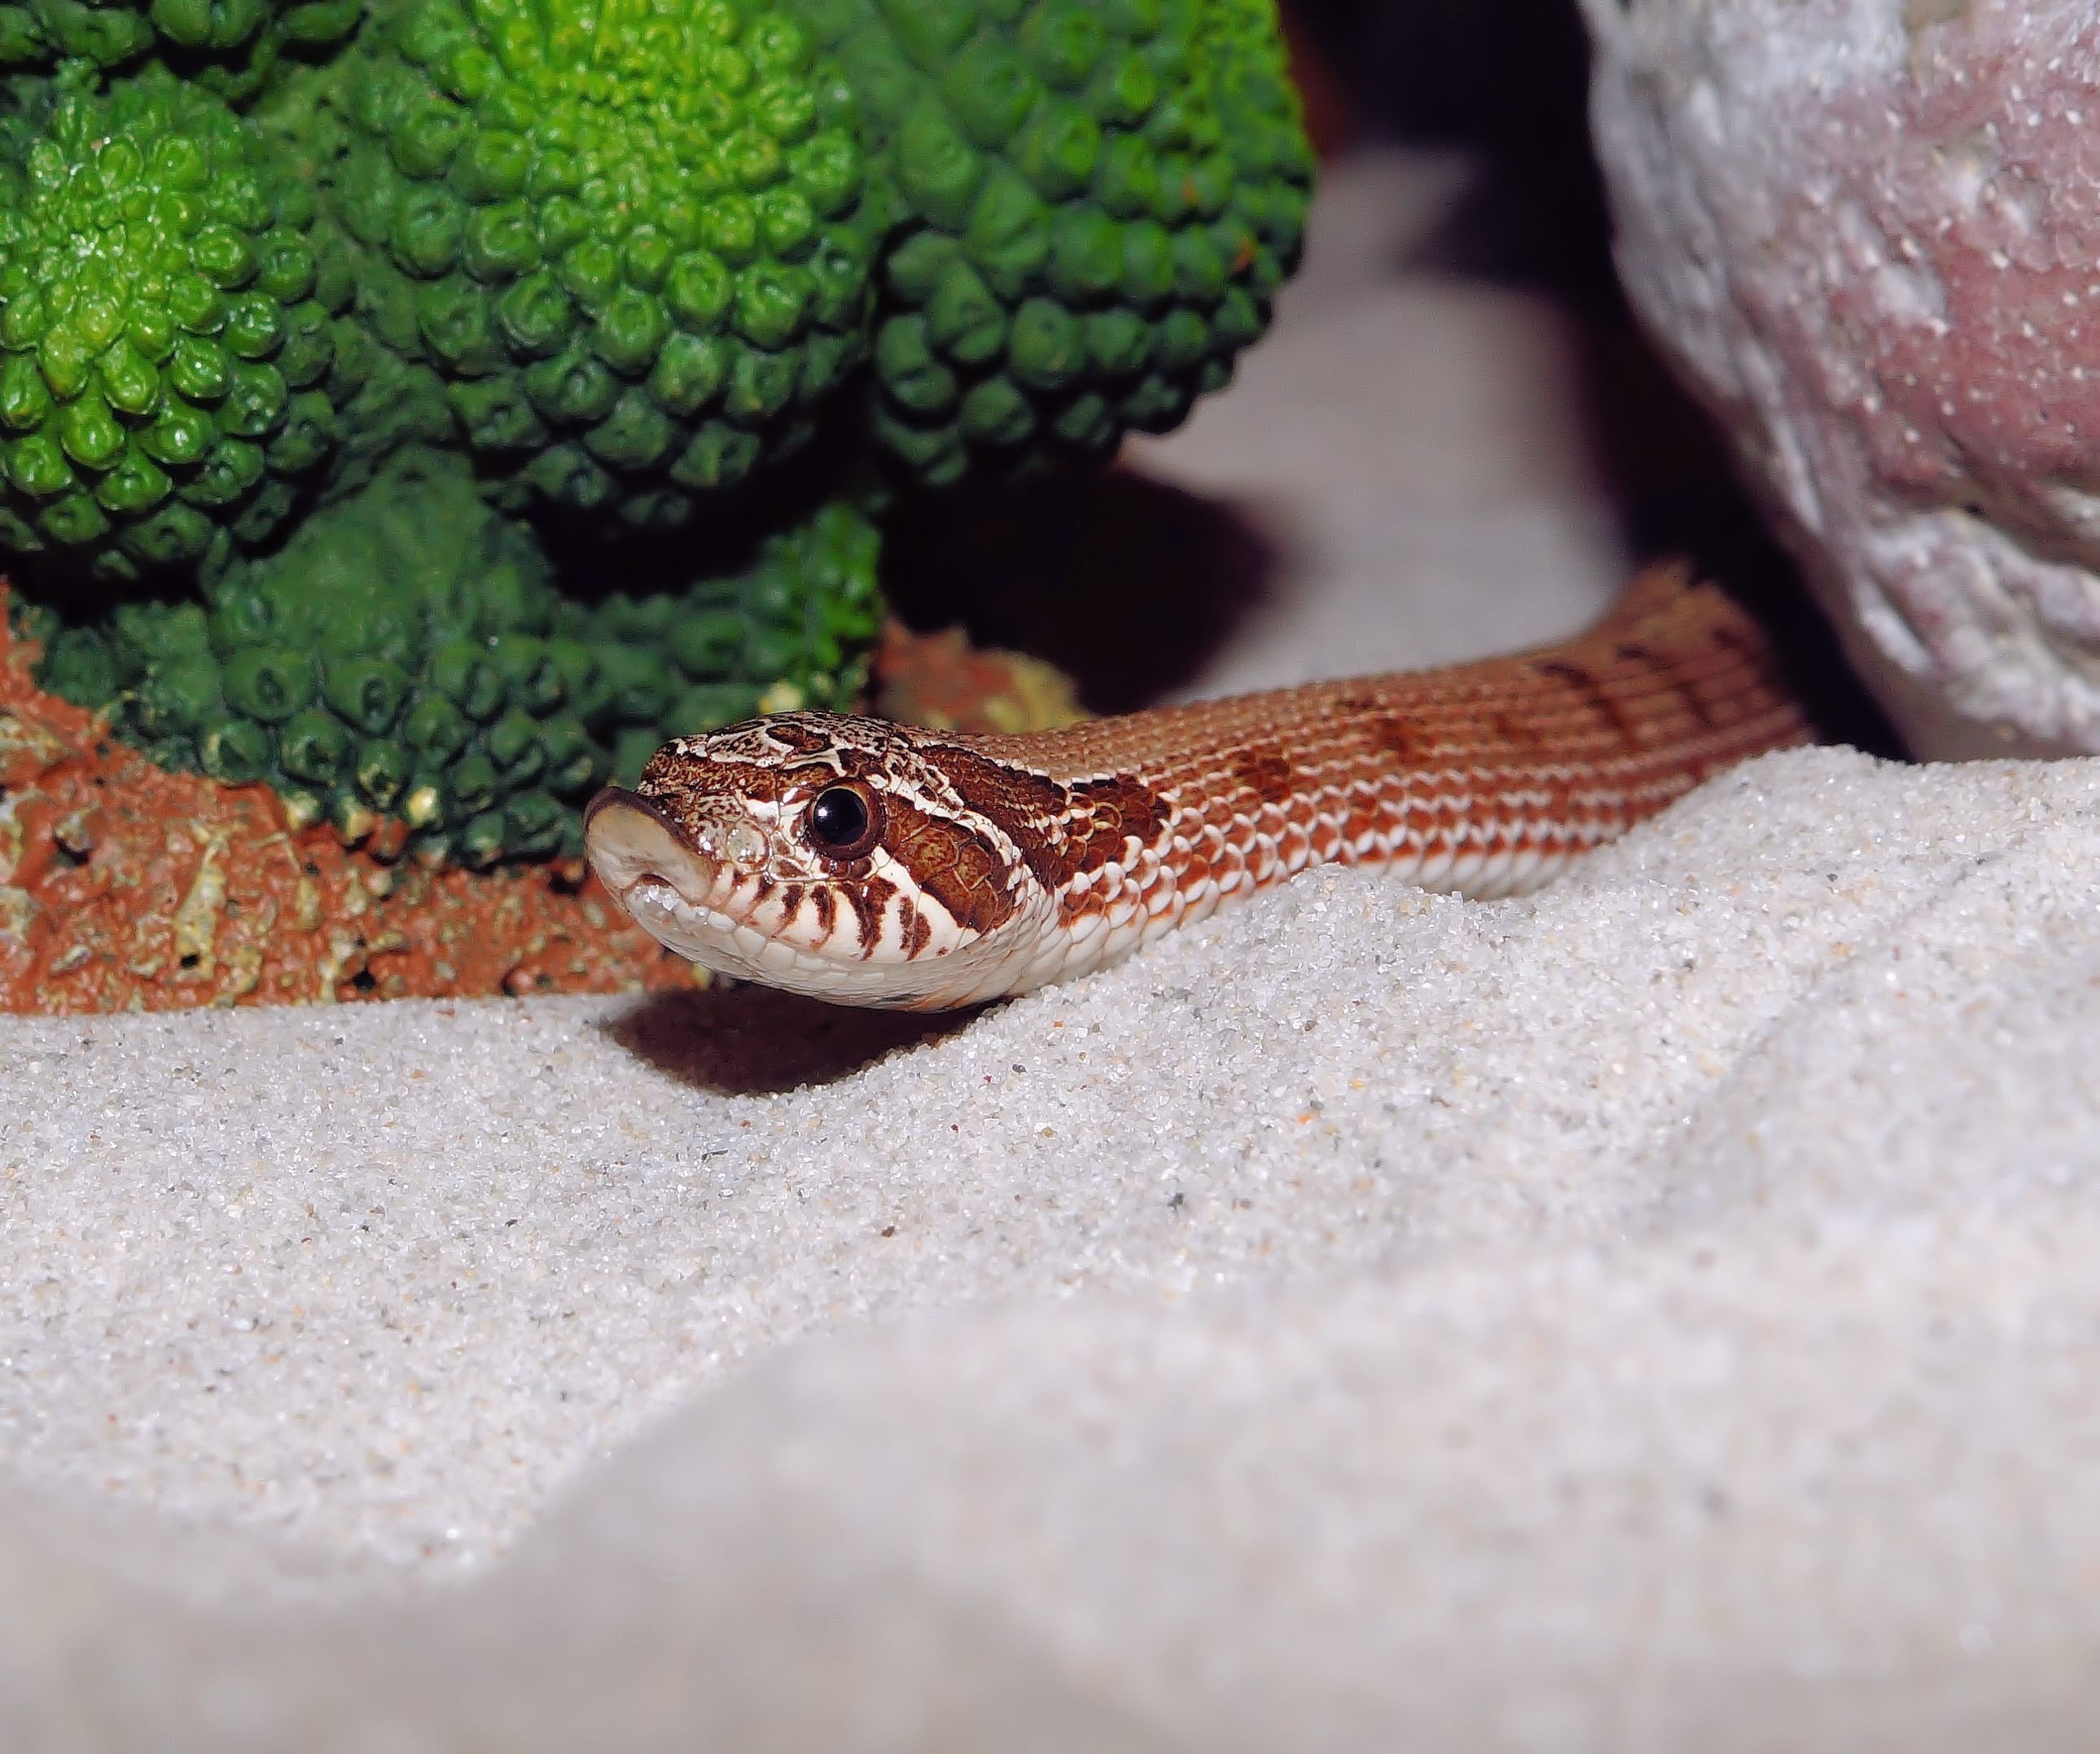 Песчаная сестрица гадюки. Песчаный удавчик в террариуме. Крючконосая змея. Песчаная гадюка. Террариум для змеи.